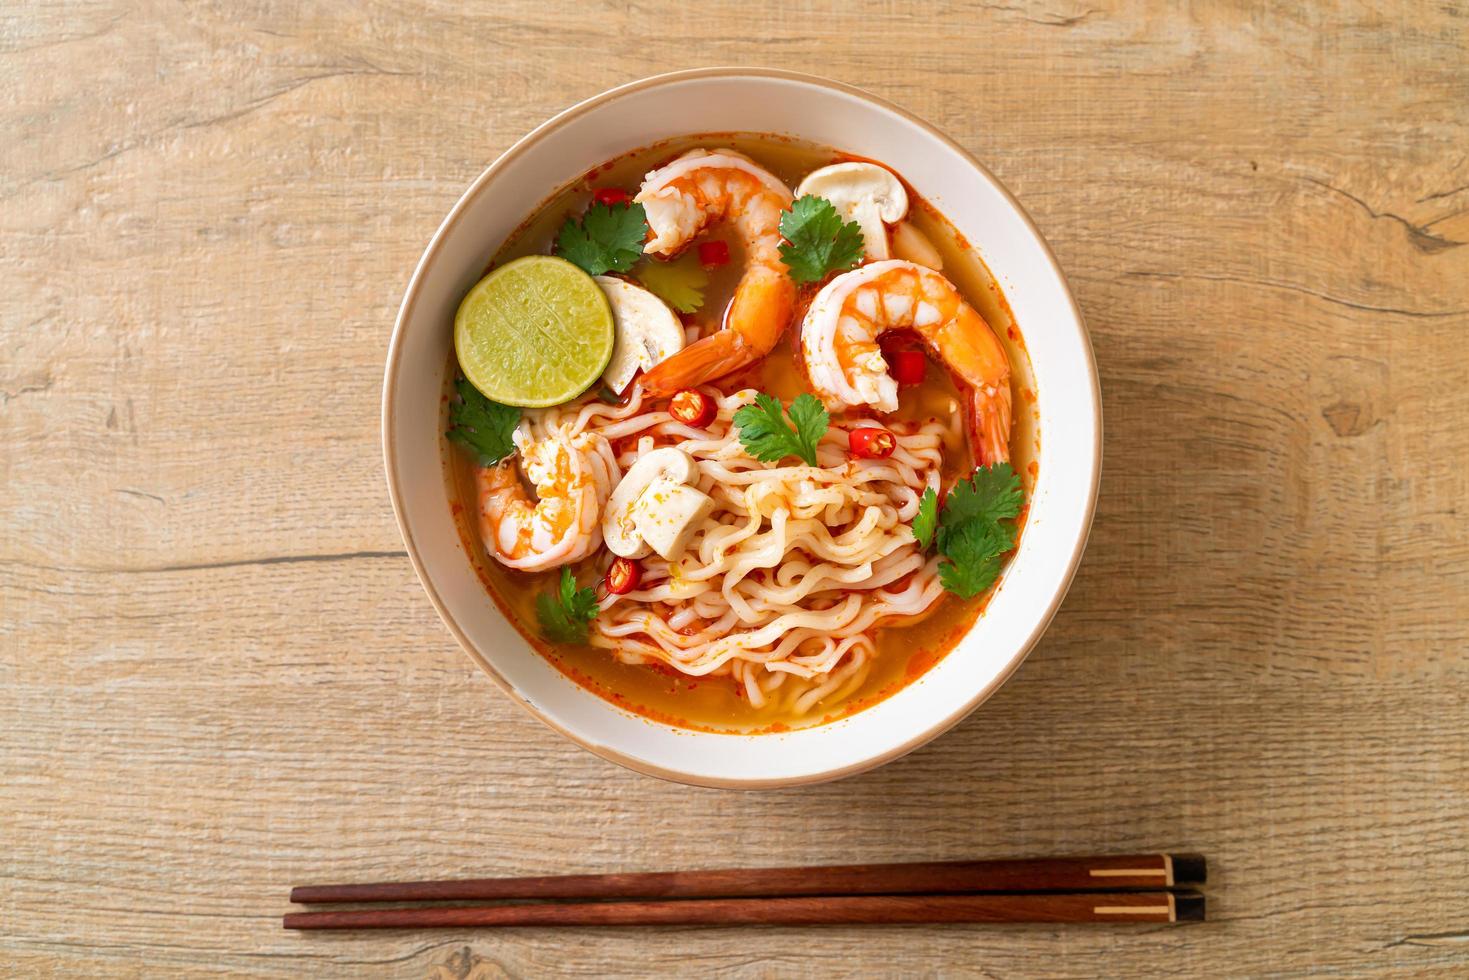 nouilles instantanées ramen dans une soupe épicée aux crevettes - tom yum kung - style de cuisine asiatique photo